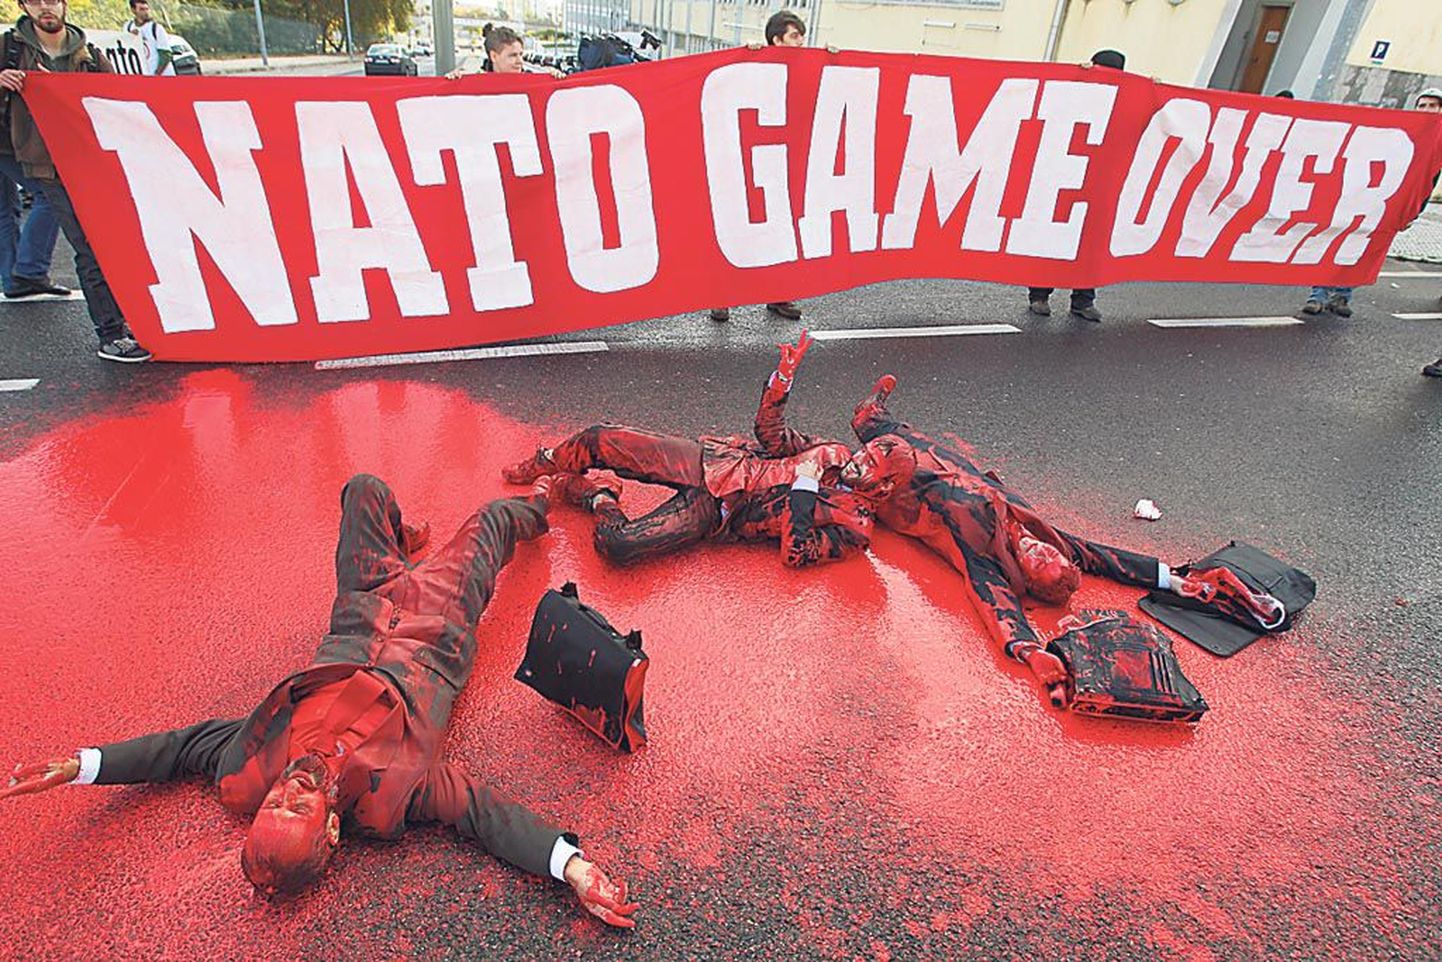 NATO-vastaste plakat teatab, et mäng on läbi.